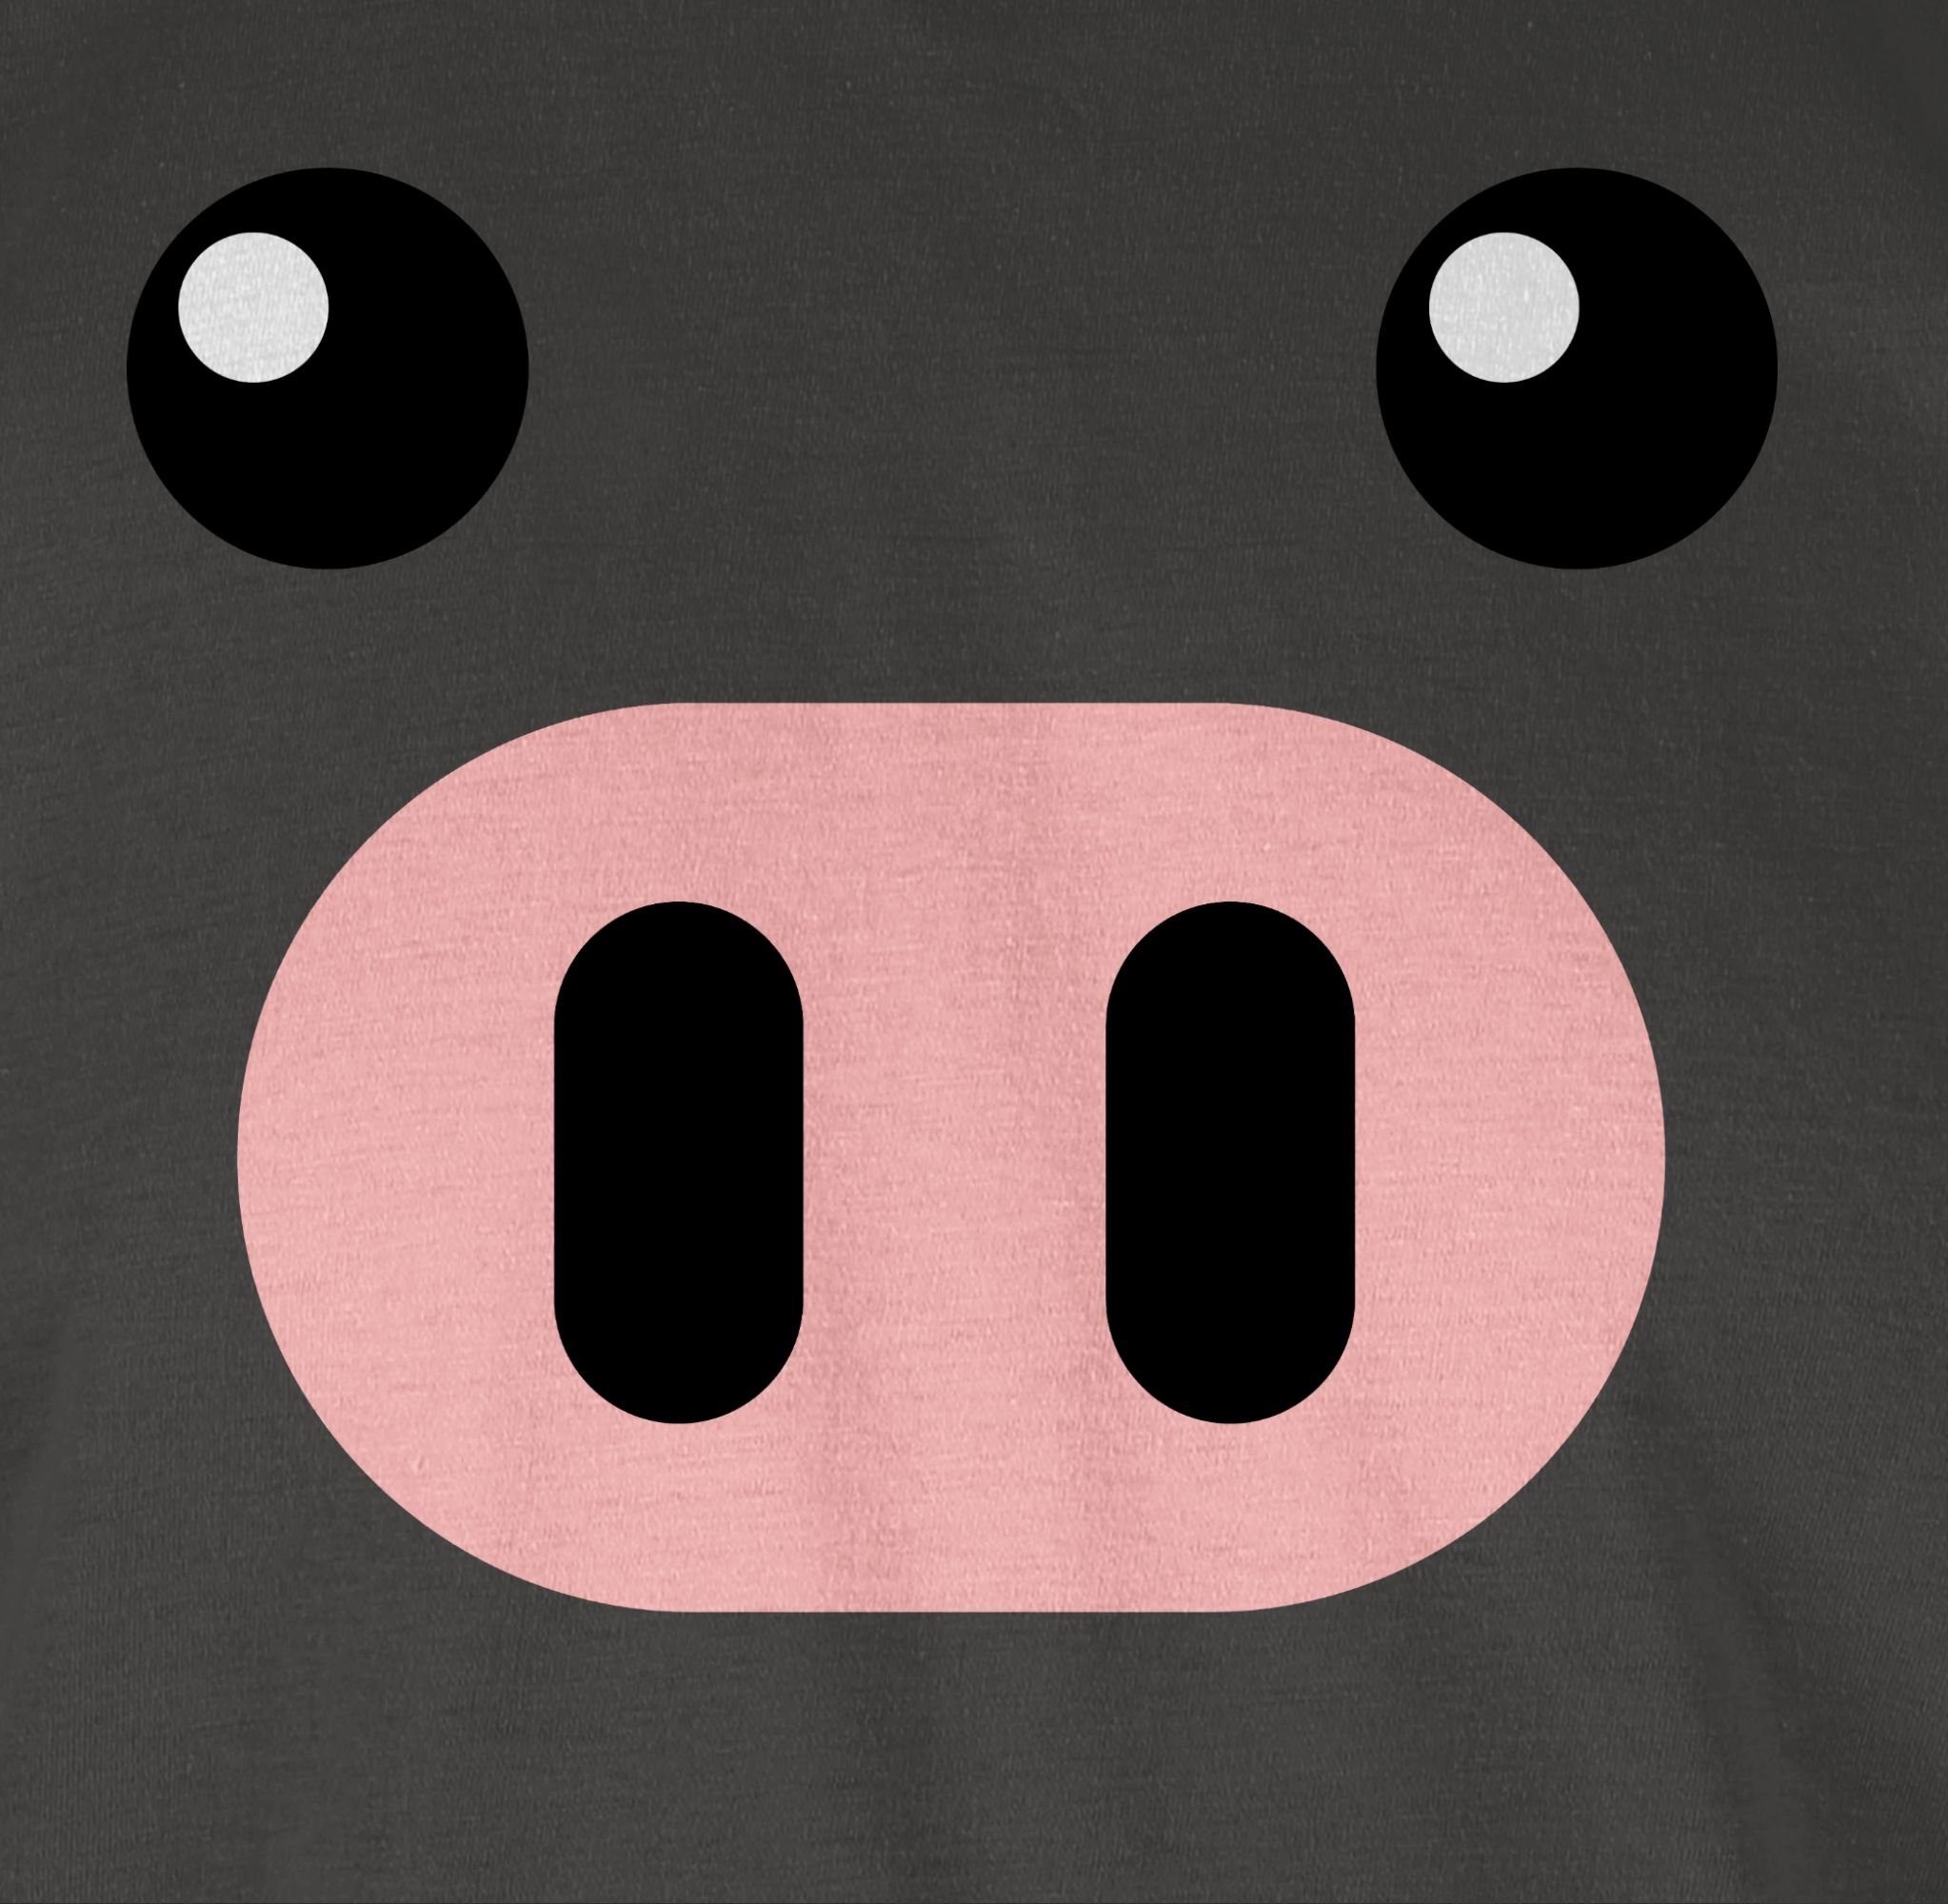 Sau Schweinchen Schweine Schweinebau Karneval Ferkel T-Shirt - Outfit 1 Shirtracer Schwein Pig Dunkelgrau Kostüm